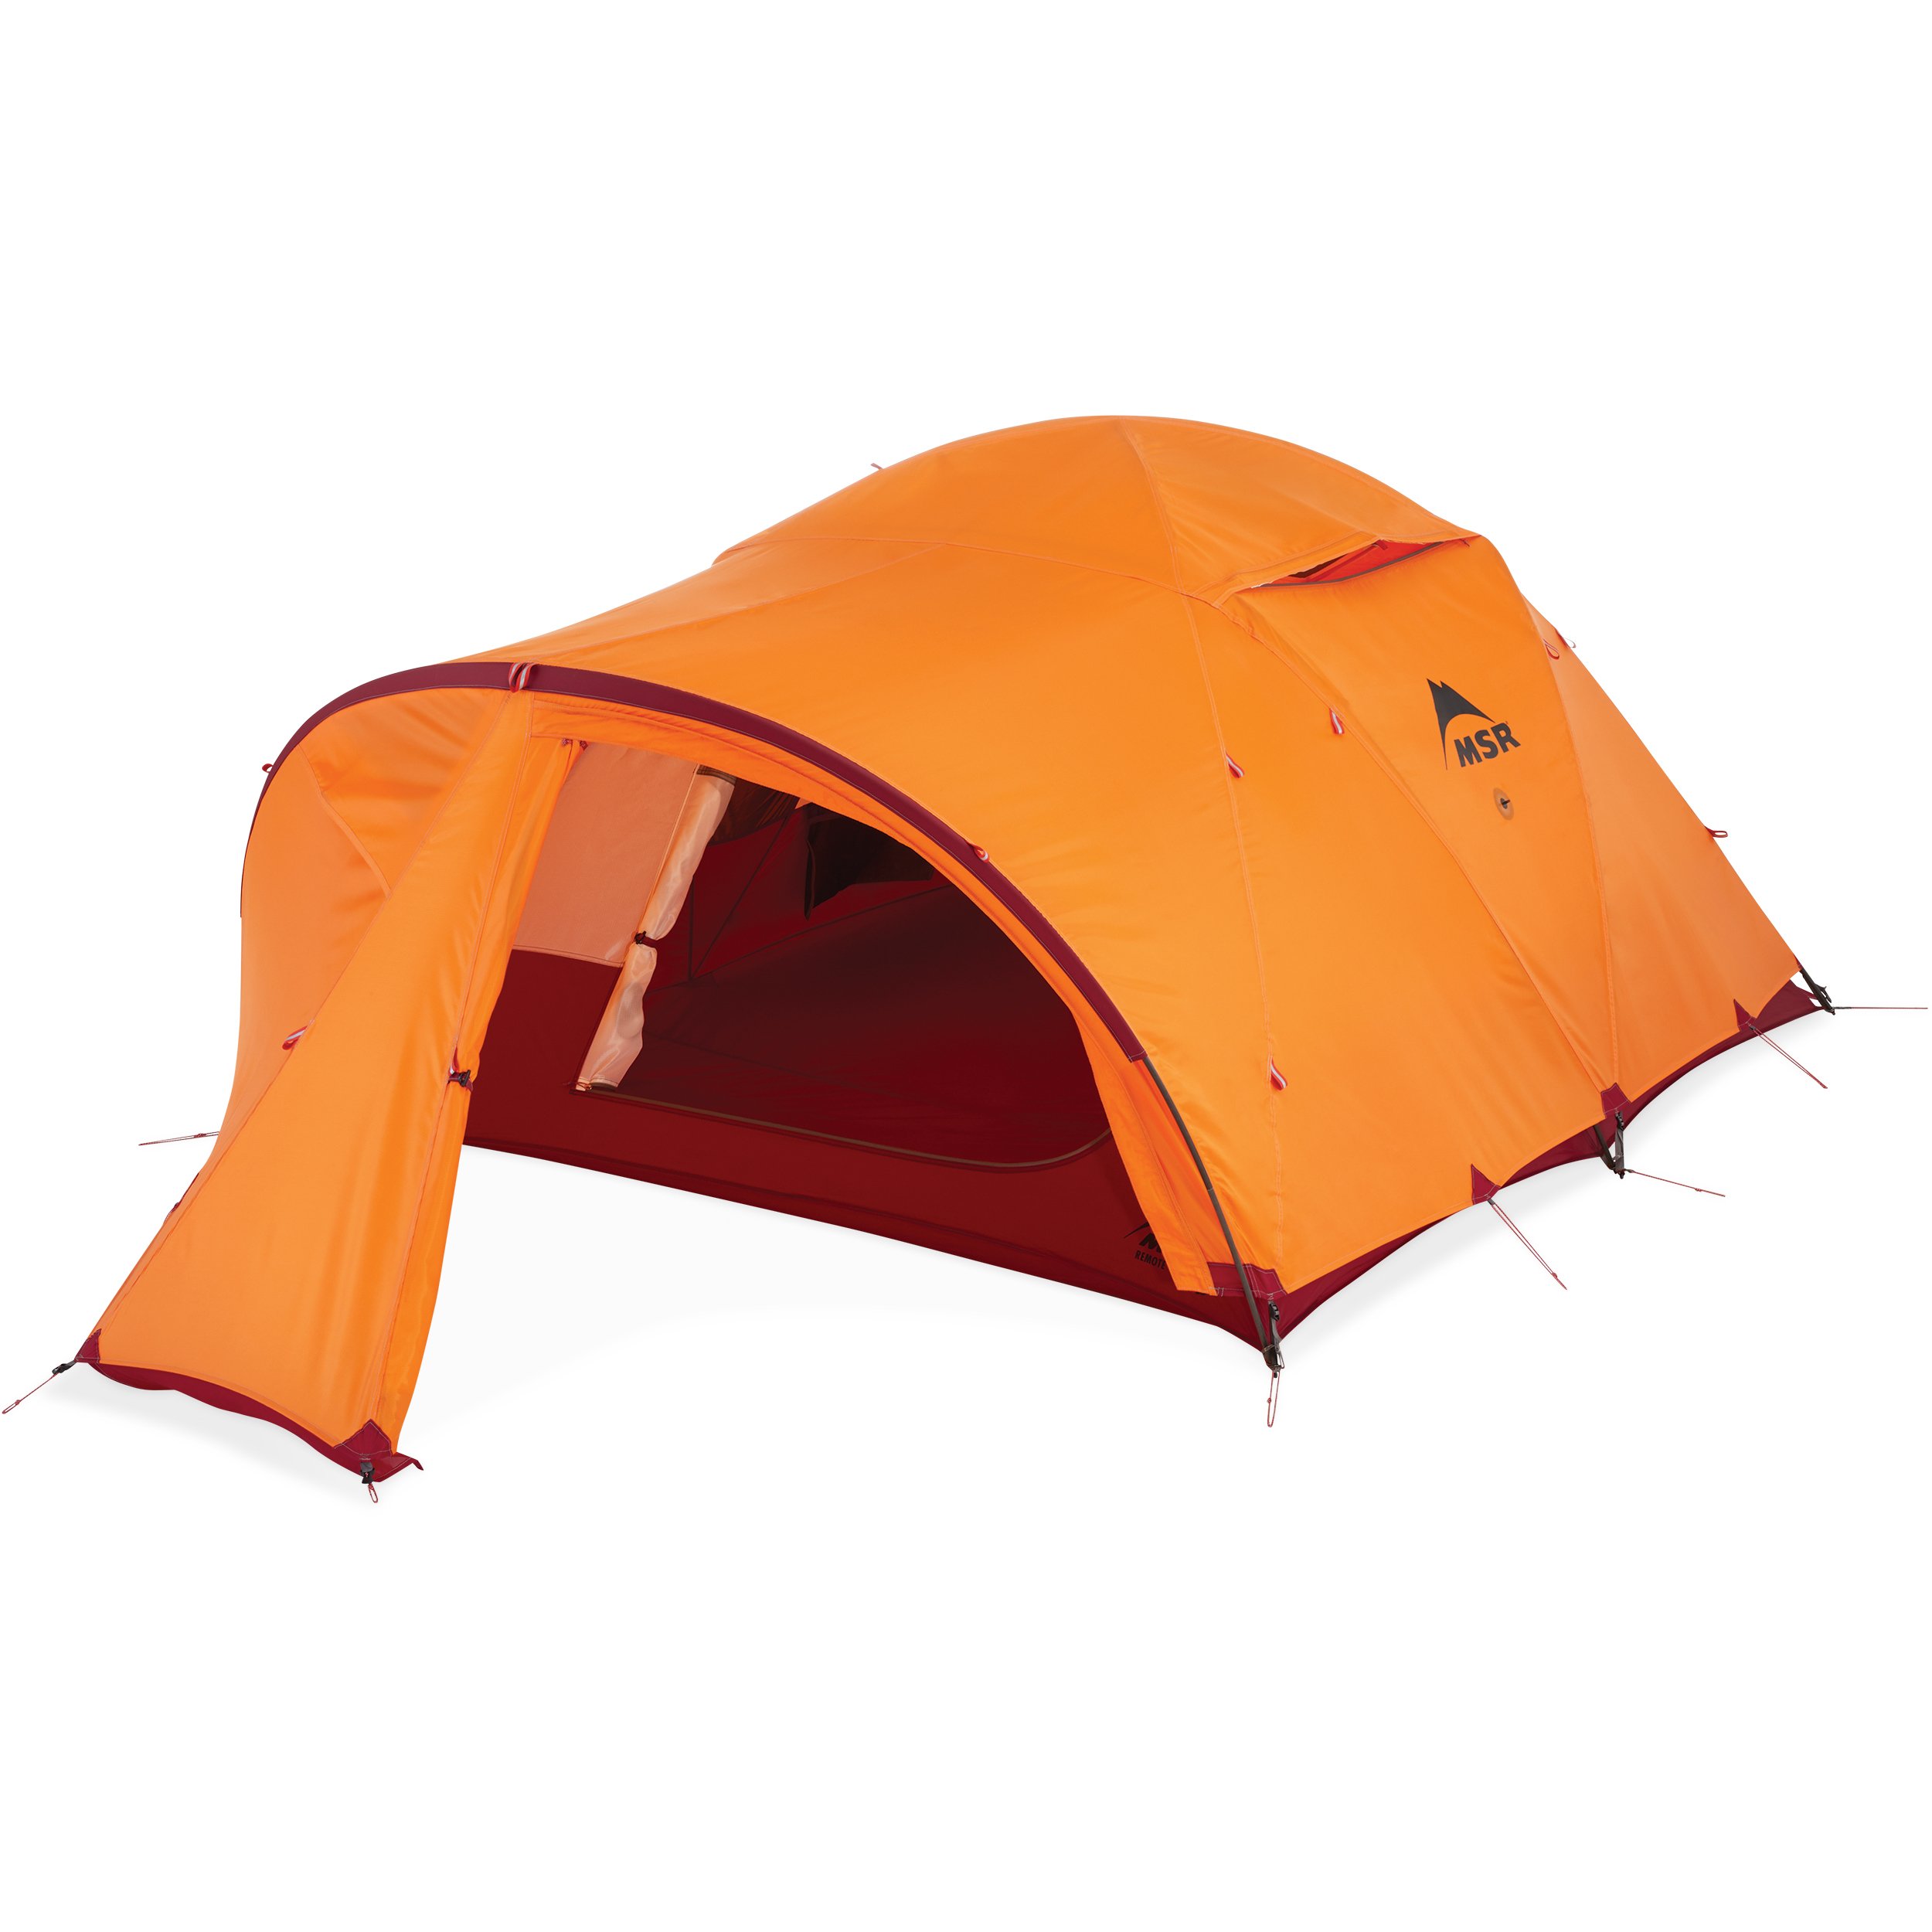 Ga naar beneden Verslaafde Geit Remote™ 3 - Roomy 3-Person, 4-Season Mountain Tent | MSR®